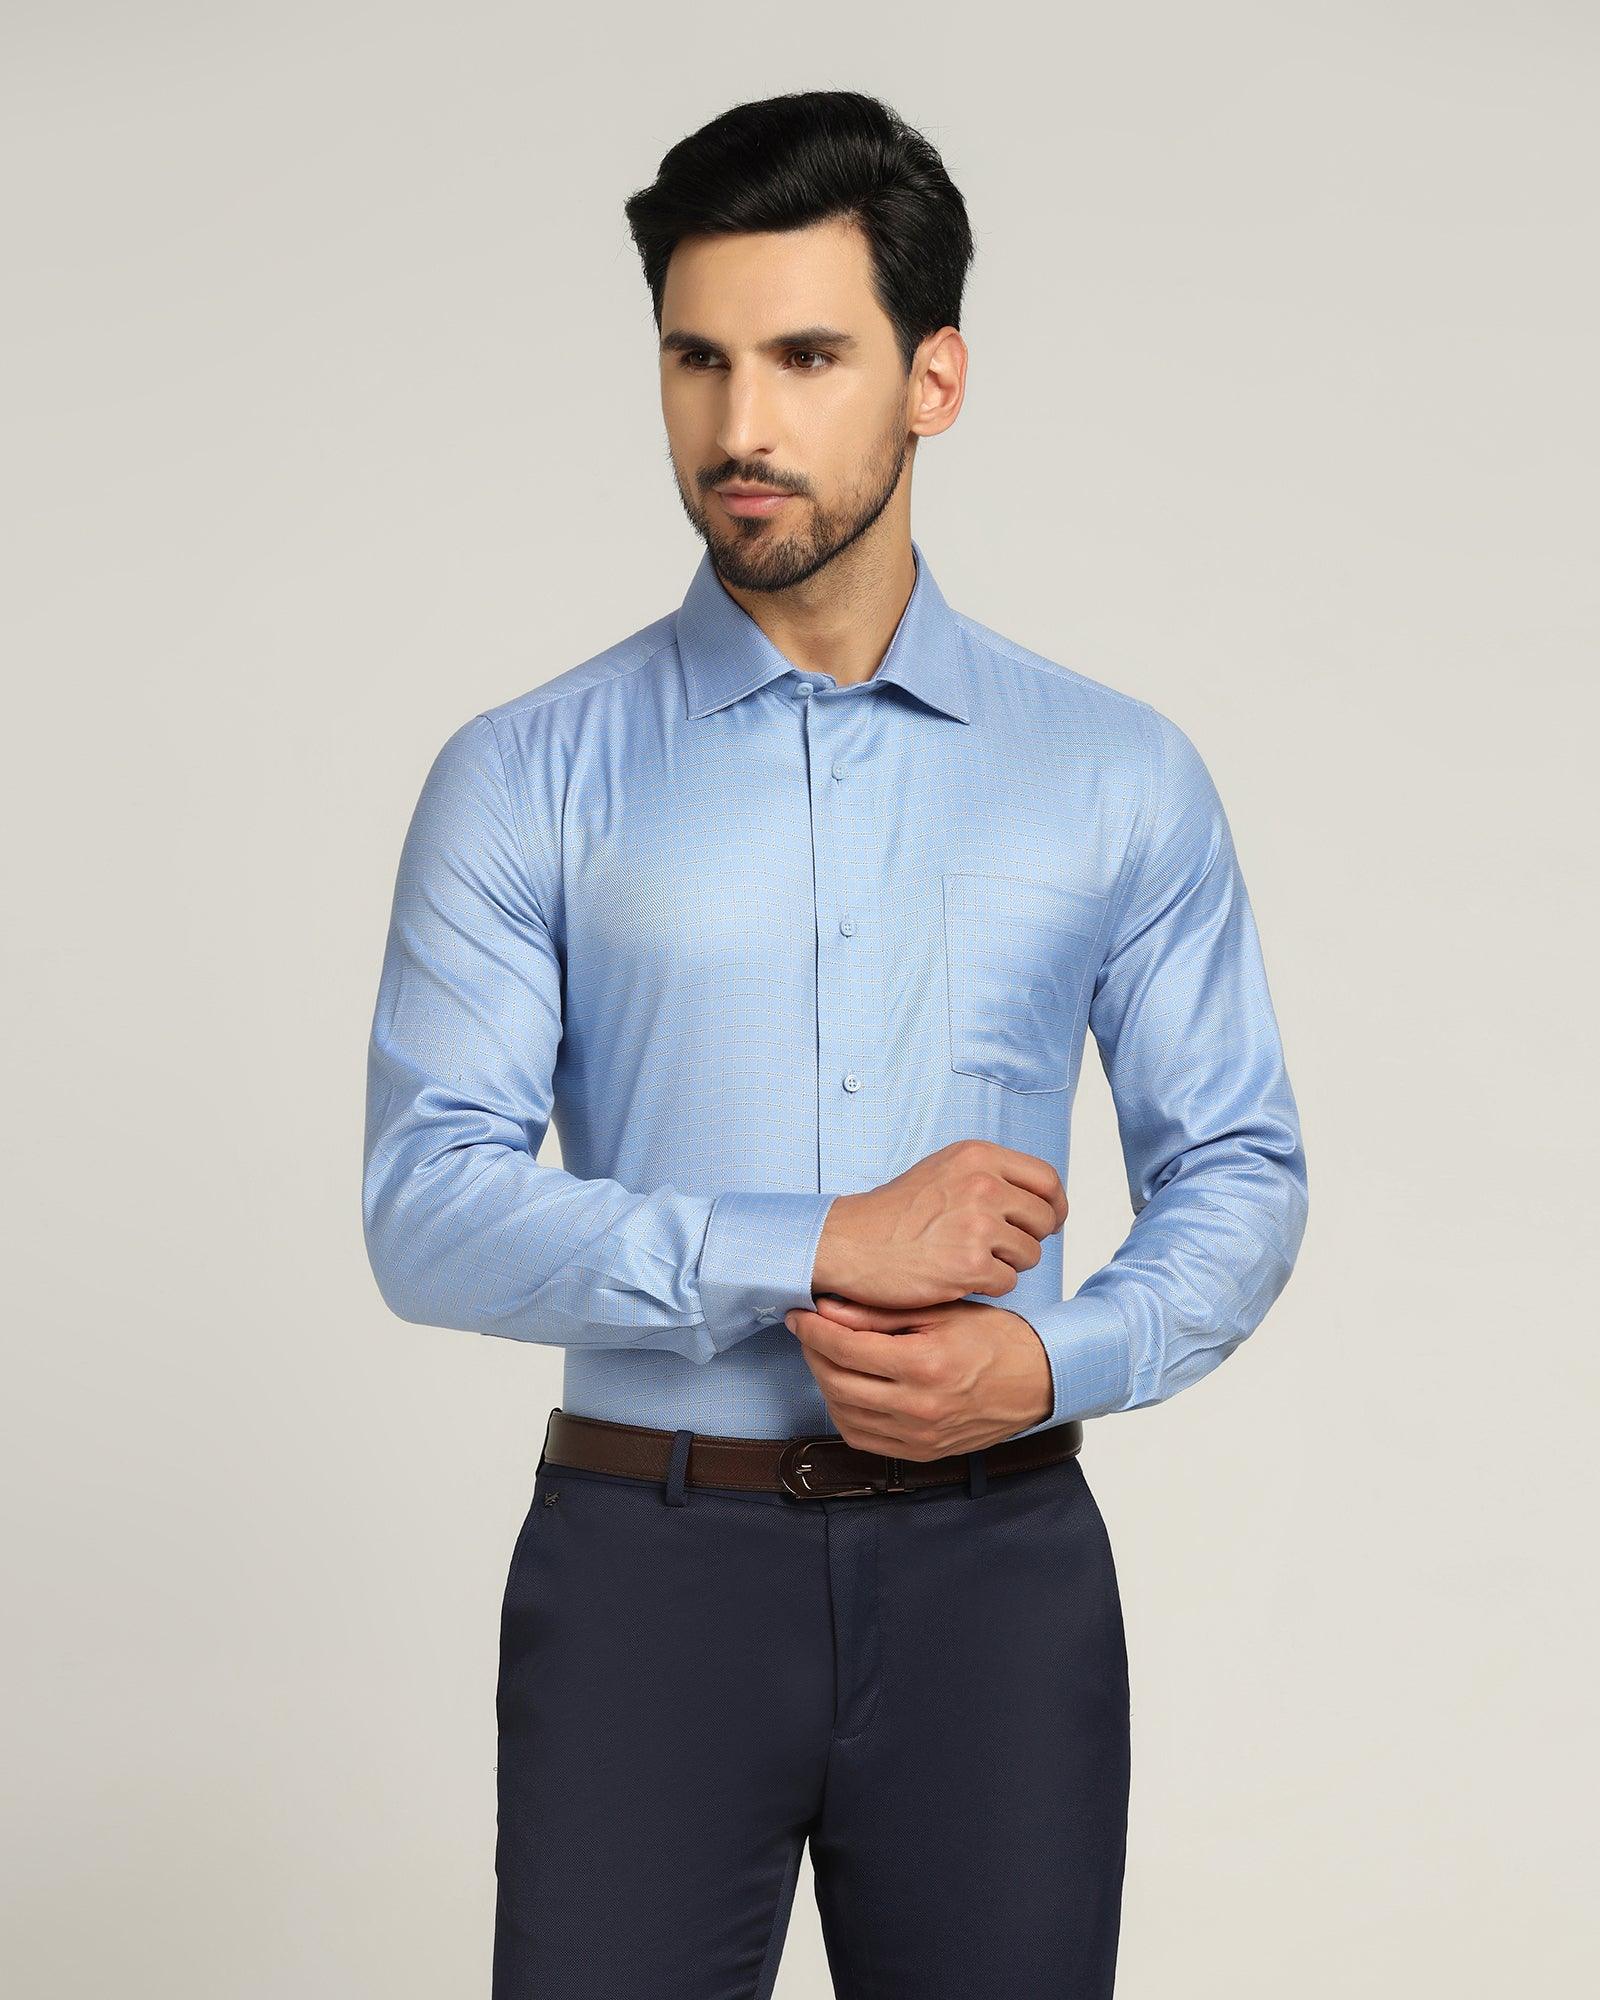 Temptech Formal Blue Check Shirt - Colossal